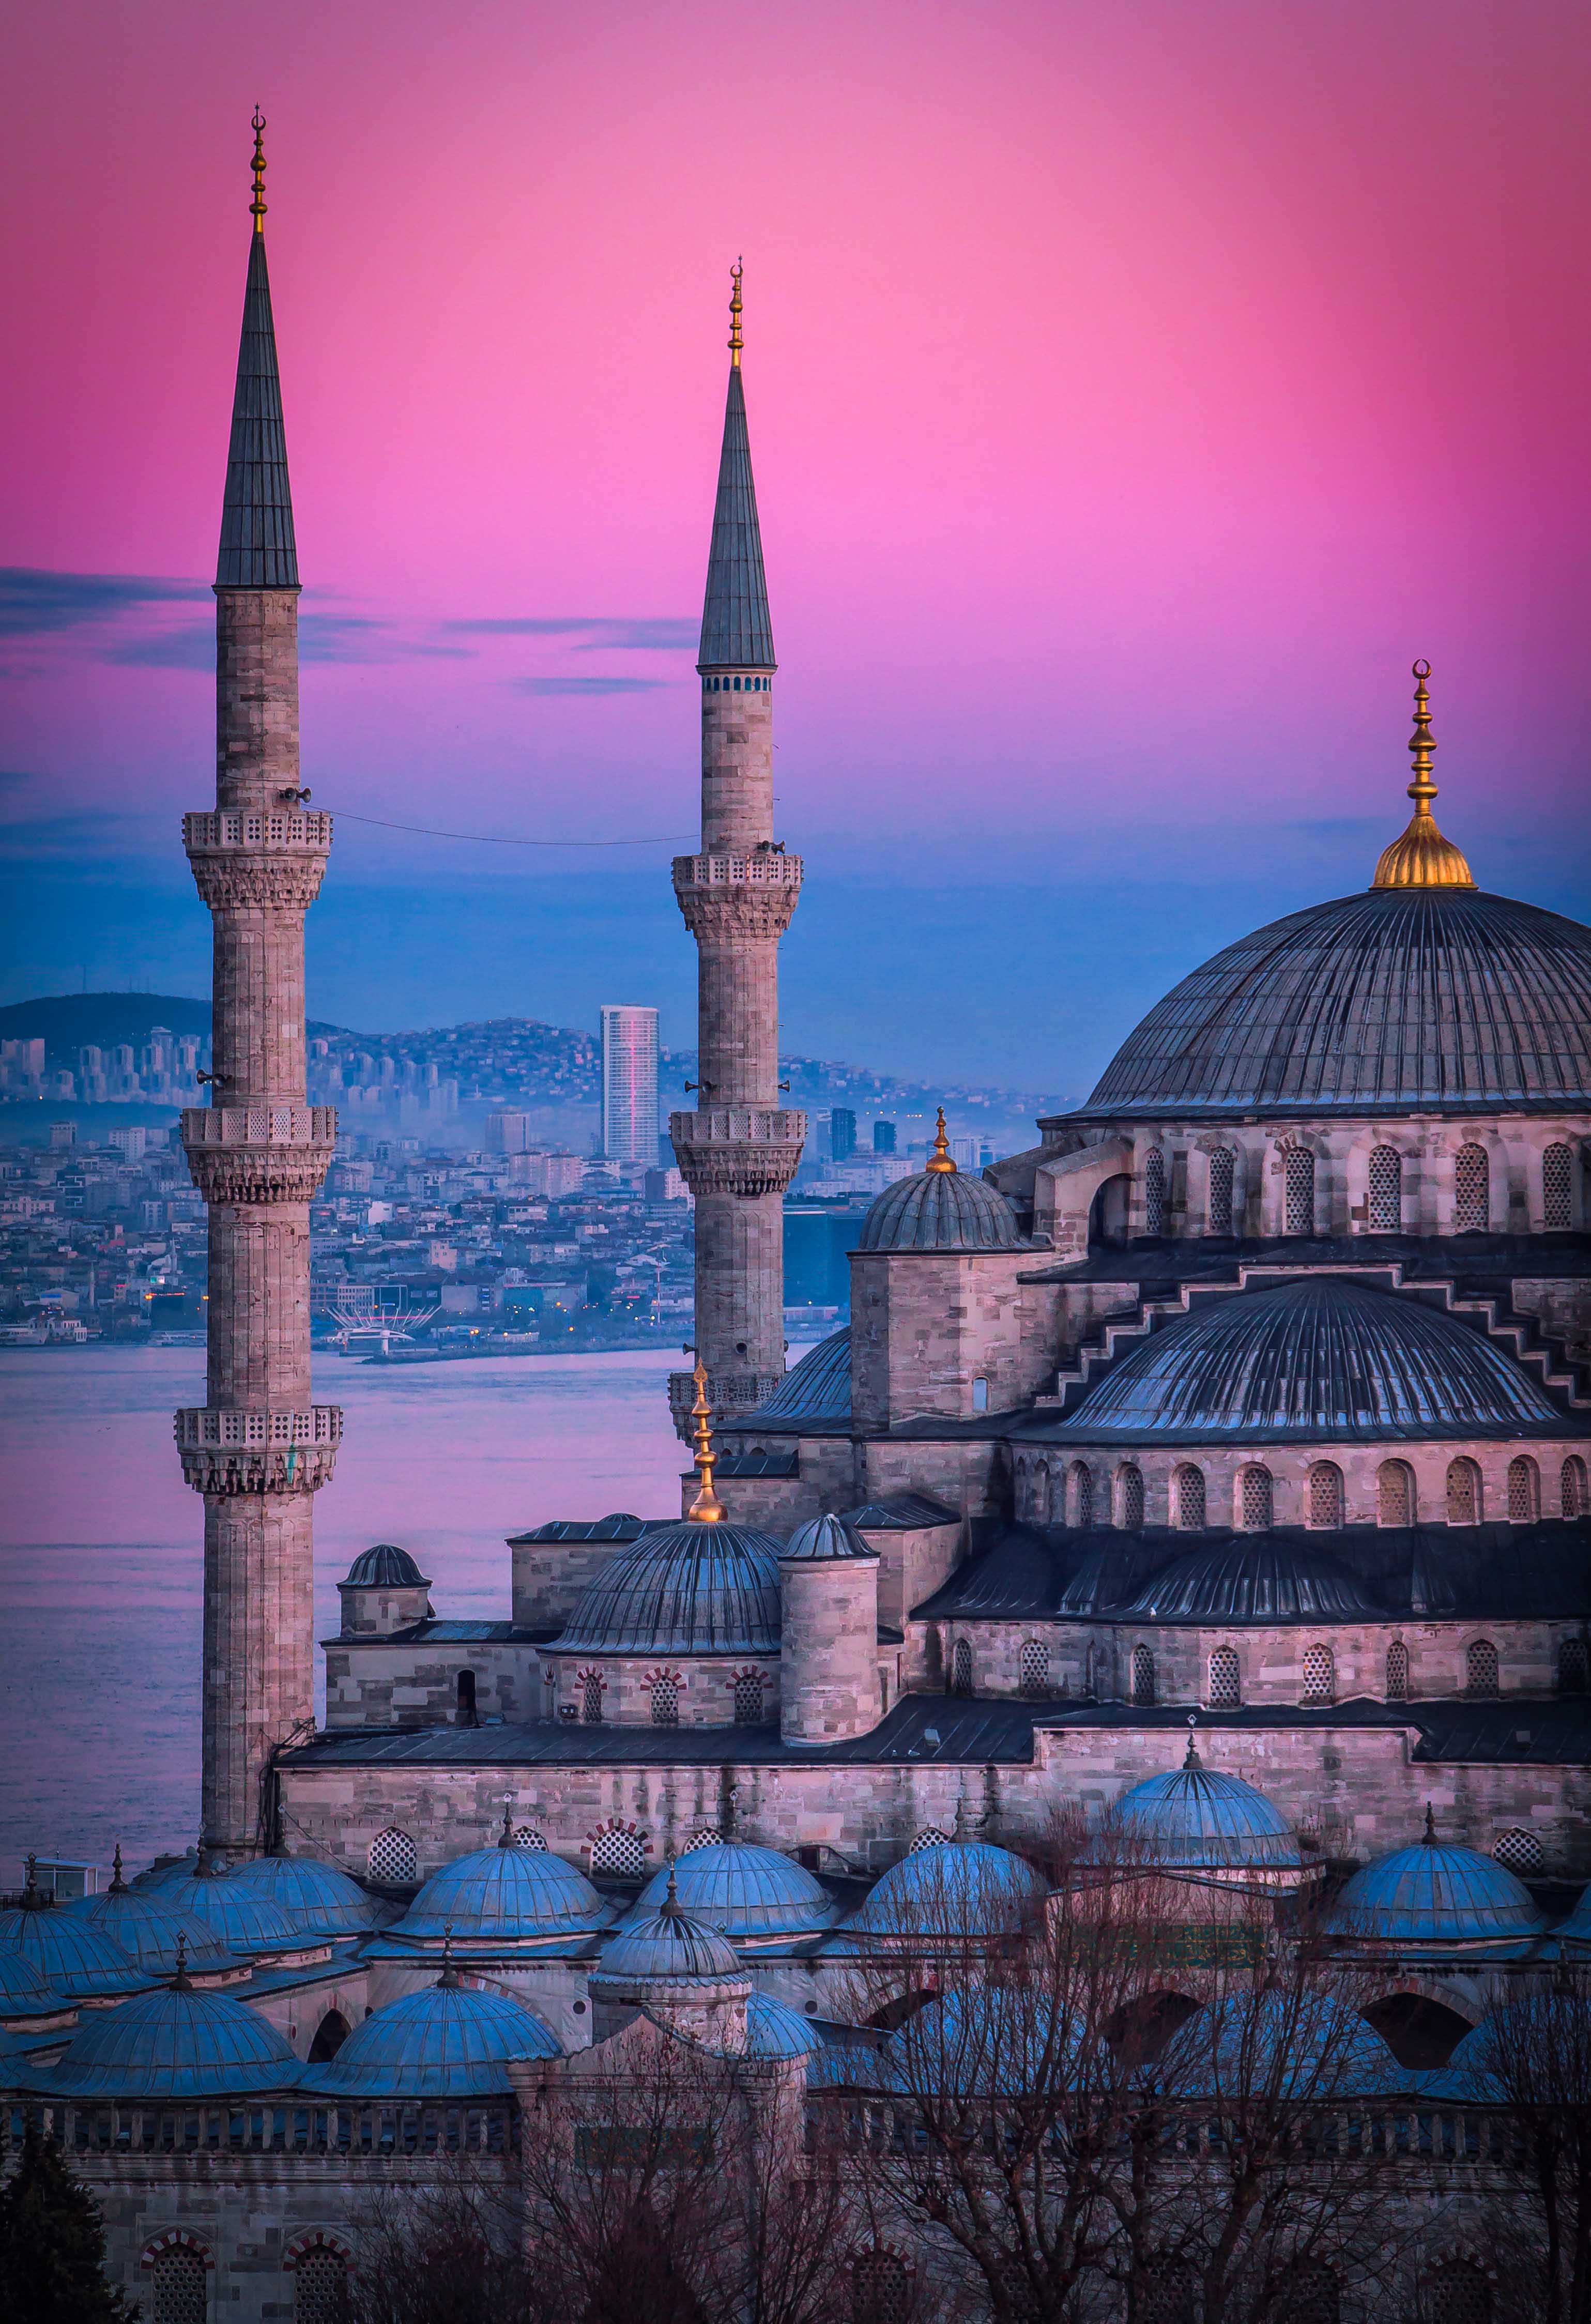 Istanbul, Turkey Wallpaper in 4K HD Wallpaper